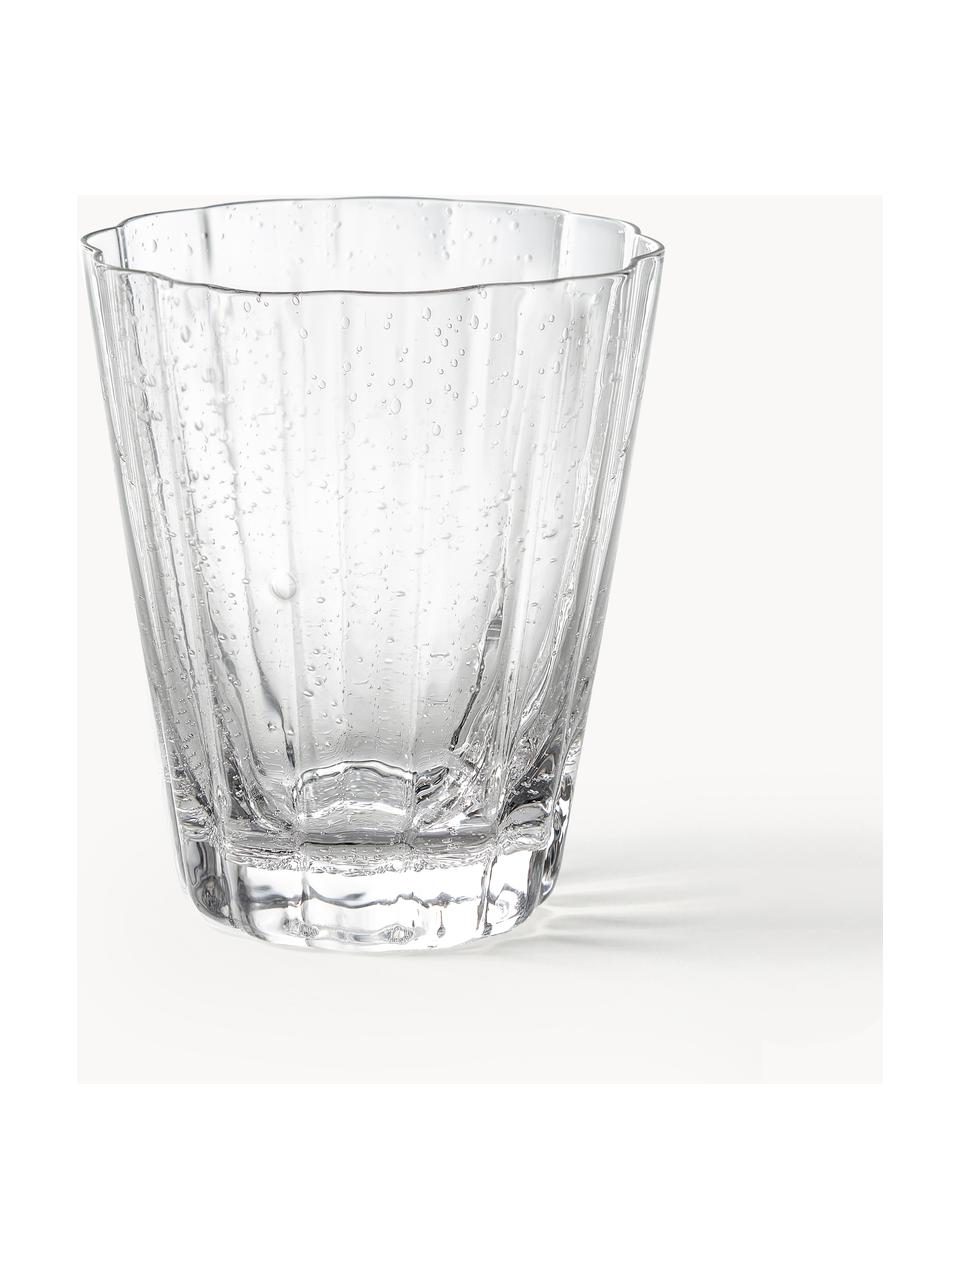 Mondgeblazen waterglazen Scallop Glasses met groefstructuur, 4 stuks, Transparant, Ø 8 x H 10 cm, 230 ml